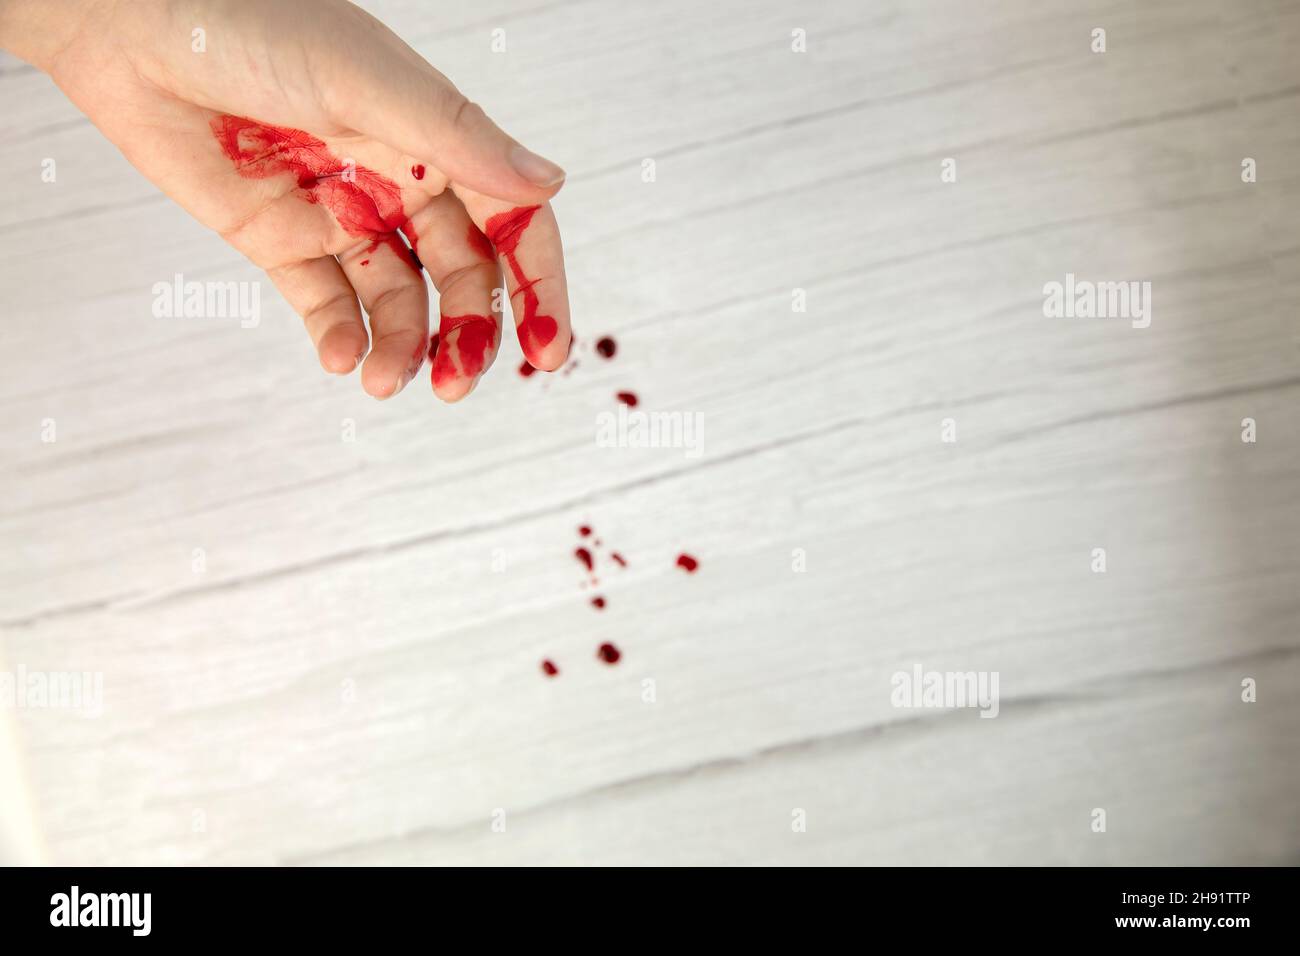 lesione della mano con sangue, ferita del sangue tagliata vista dall'alto, spazio di copia, concetto medico necessita di punti Foto Stock